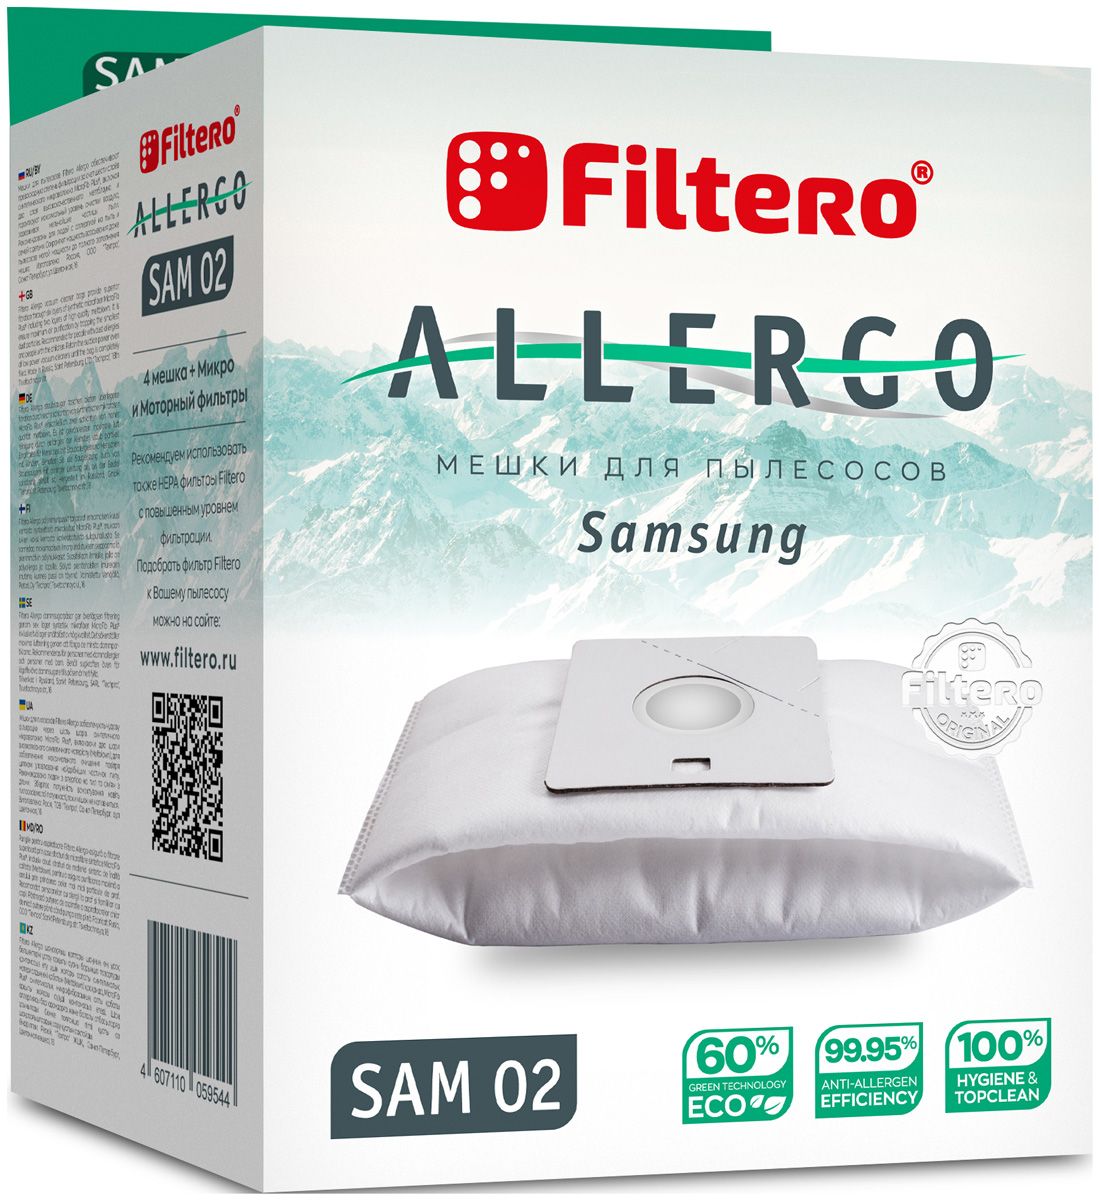 Пылесборники Filtero SAM 02 Allergo 4 шт. + моторный фильтр и микрофильтр мешок для пылесоса filtero sam 02 4 allergo